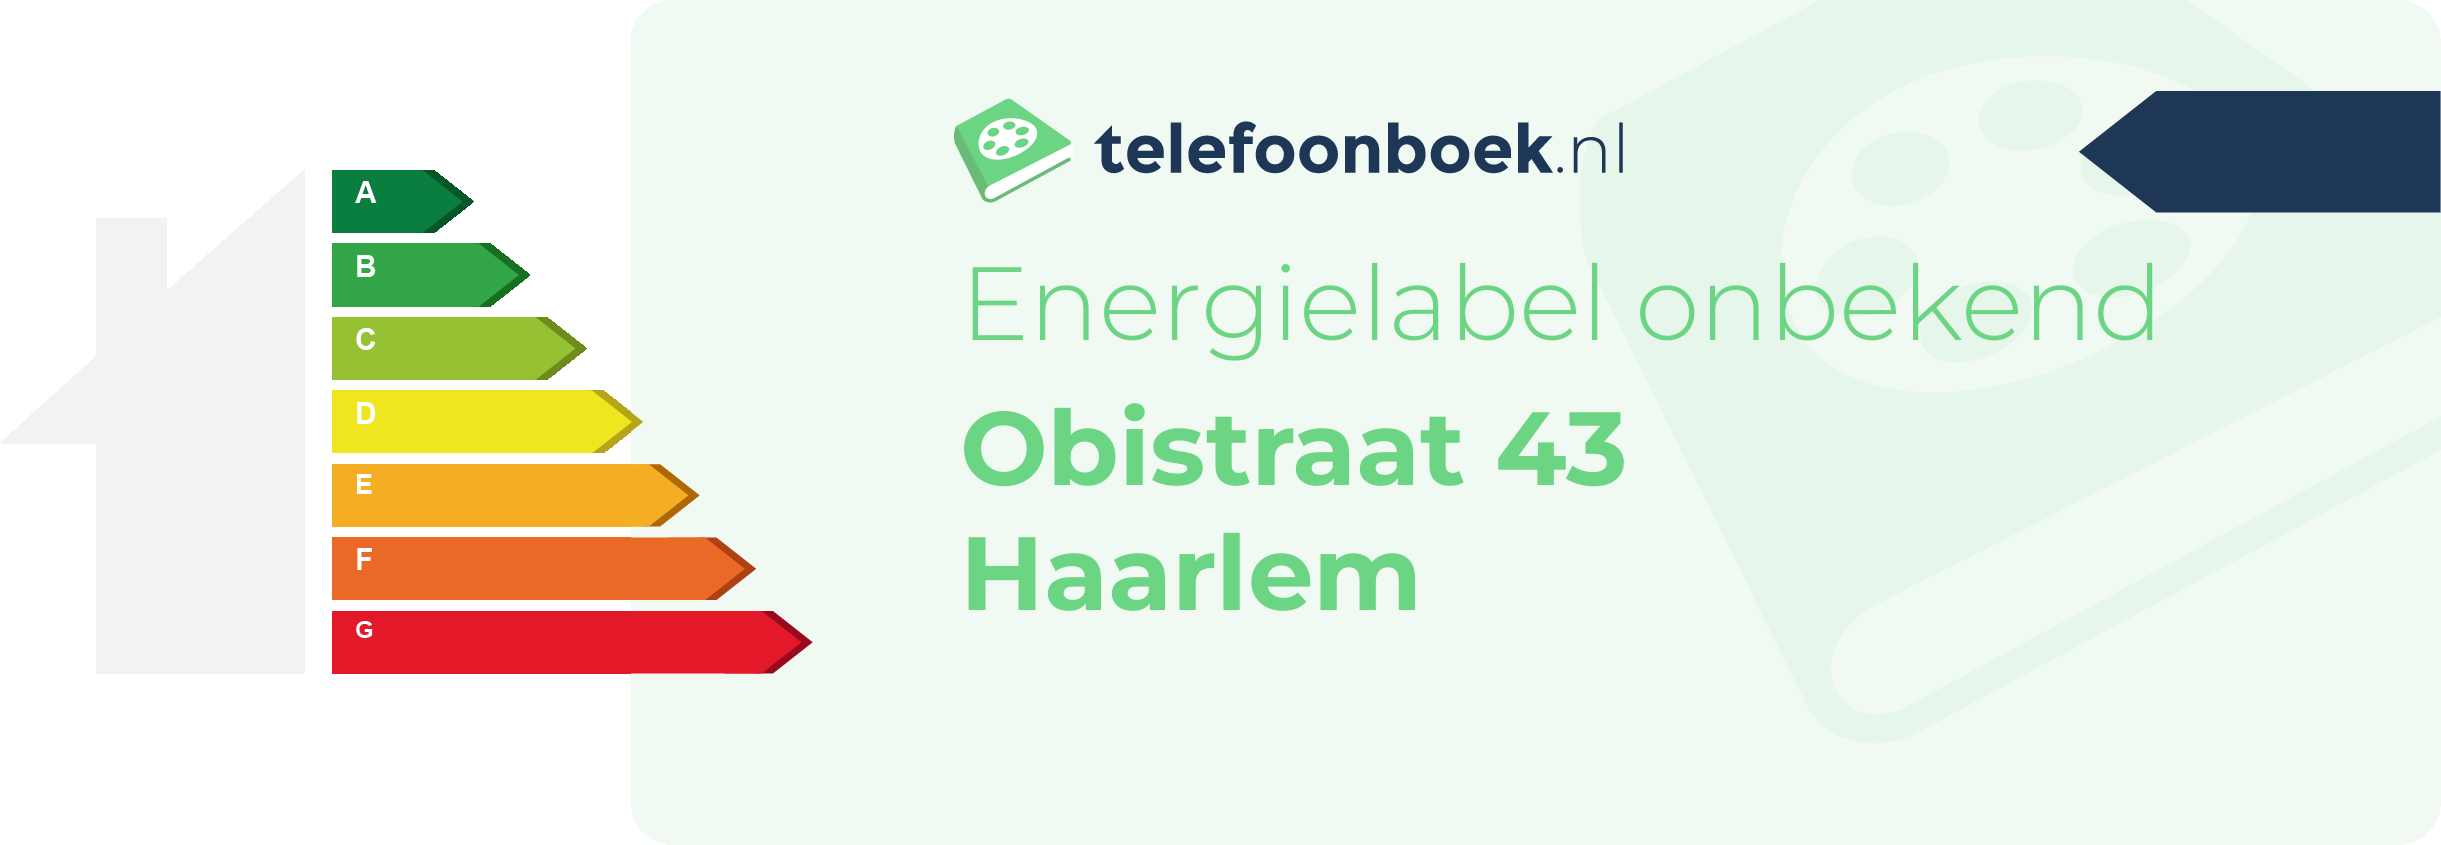 Energielabel Obistraat 43 Haarlem